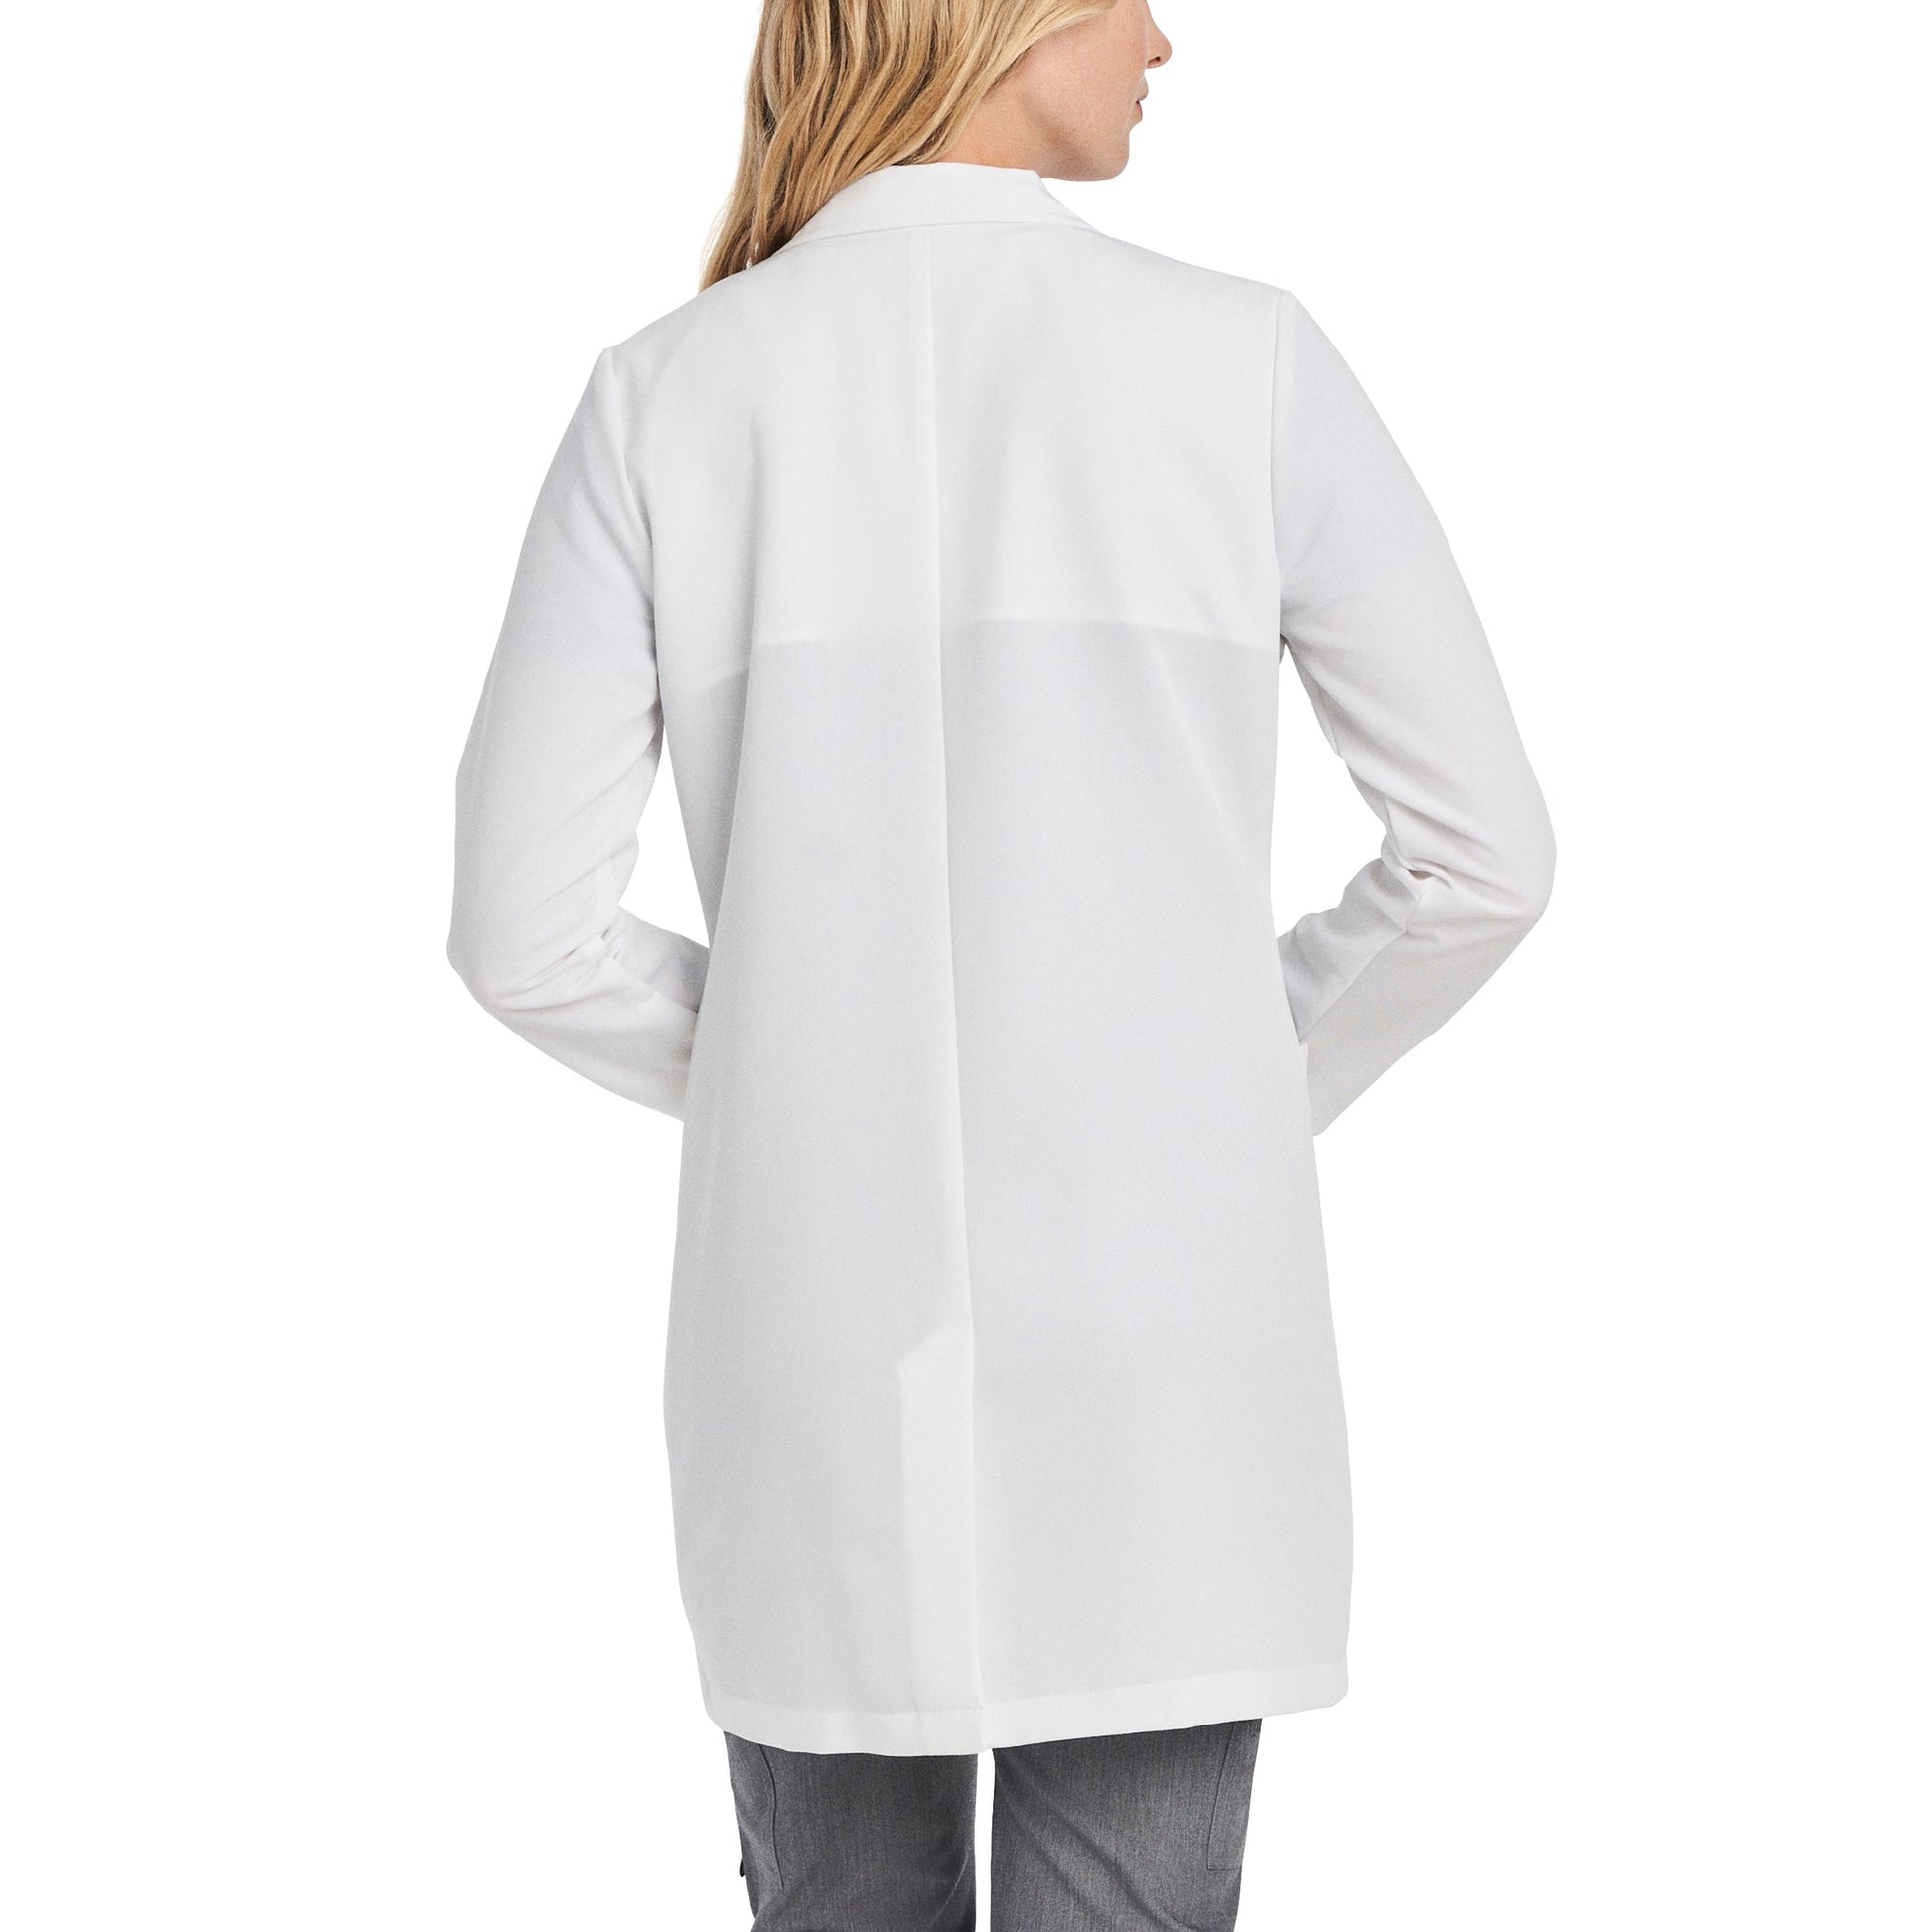 Ce haut d'uniforme col en V de style athlétique White Cross se compare au confort d'un vêtement sportif vous donne le style professionnel médical dont vous avez de besoin.